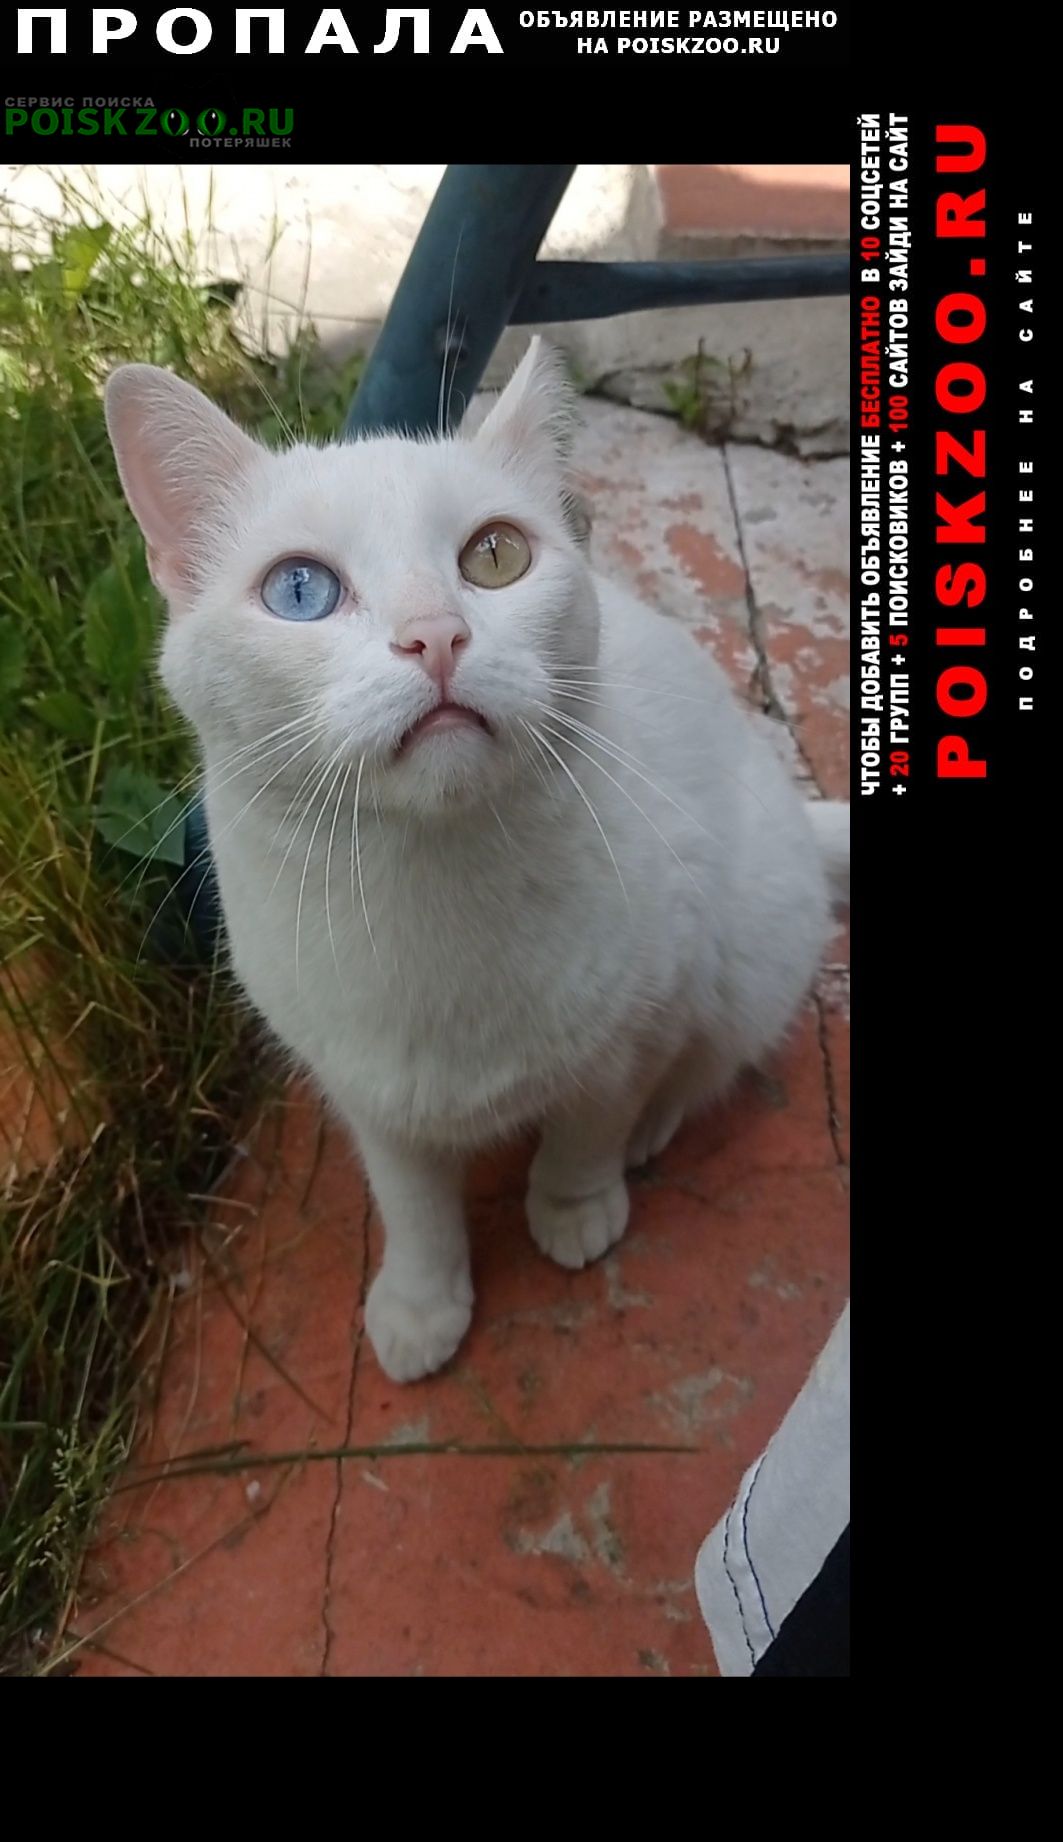 Пропало домашнее животное Пропал белый котик с разными глазами Щелково,  пушок, белый, с разными глазами (один зелёный, другой голубой).. №176002